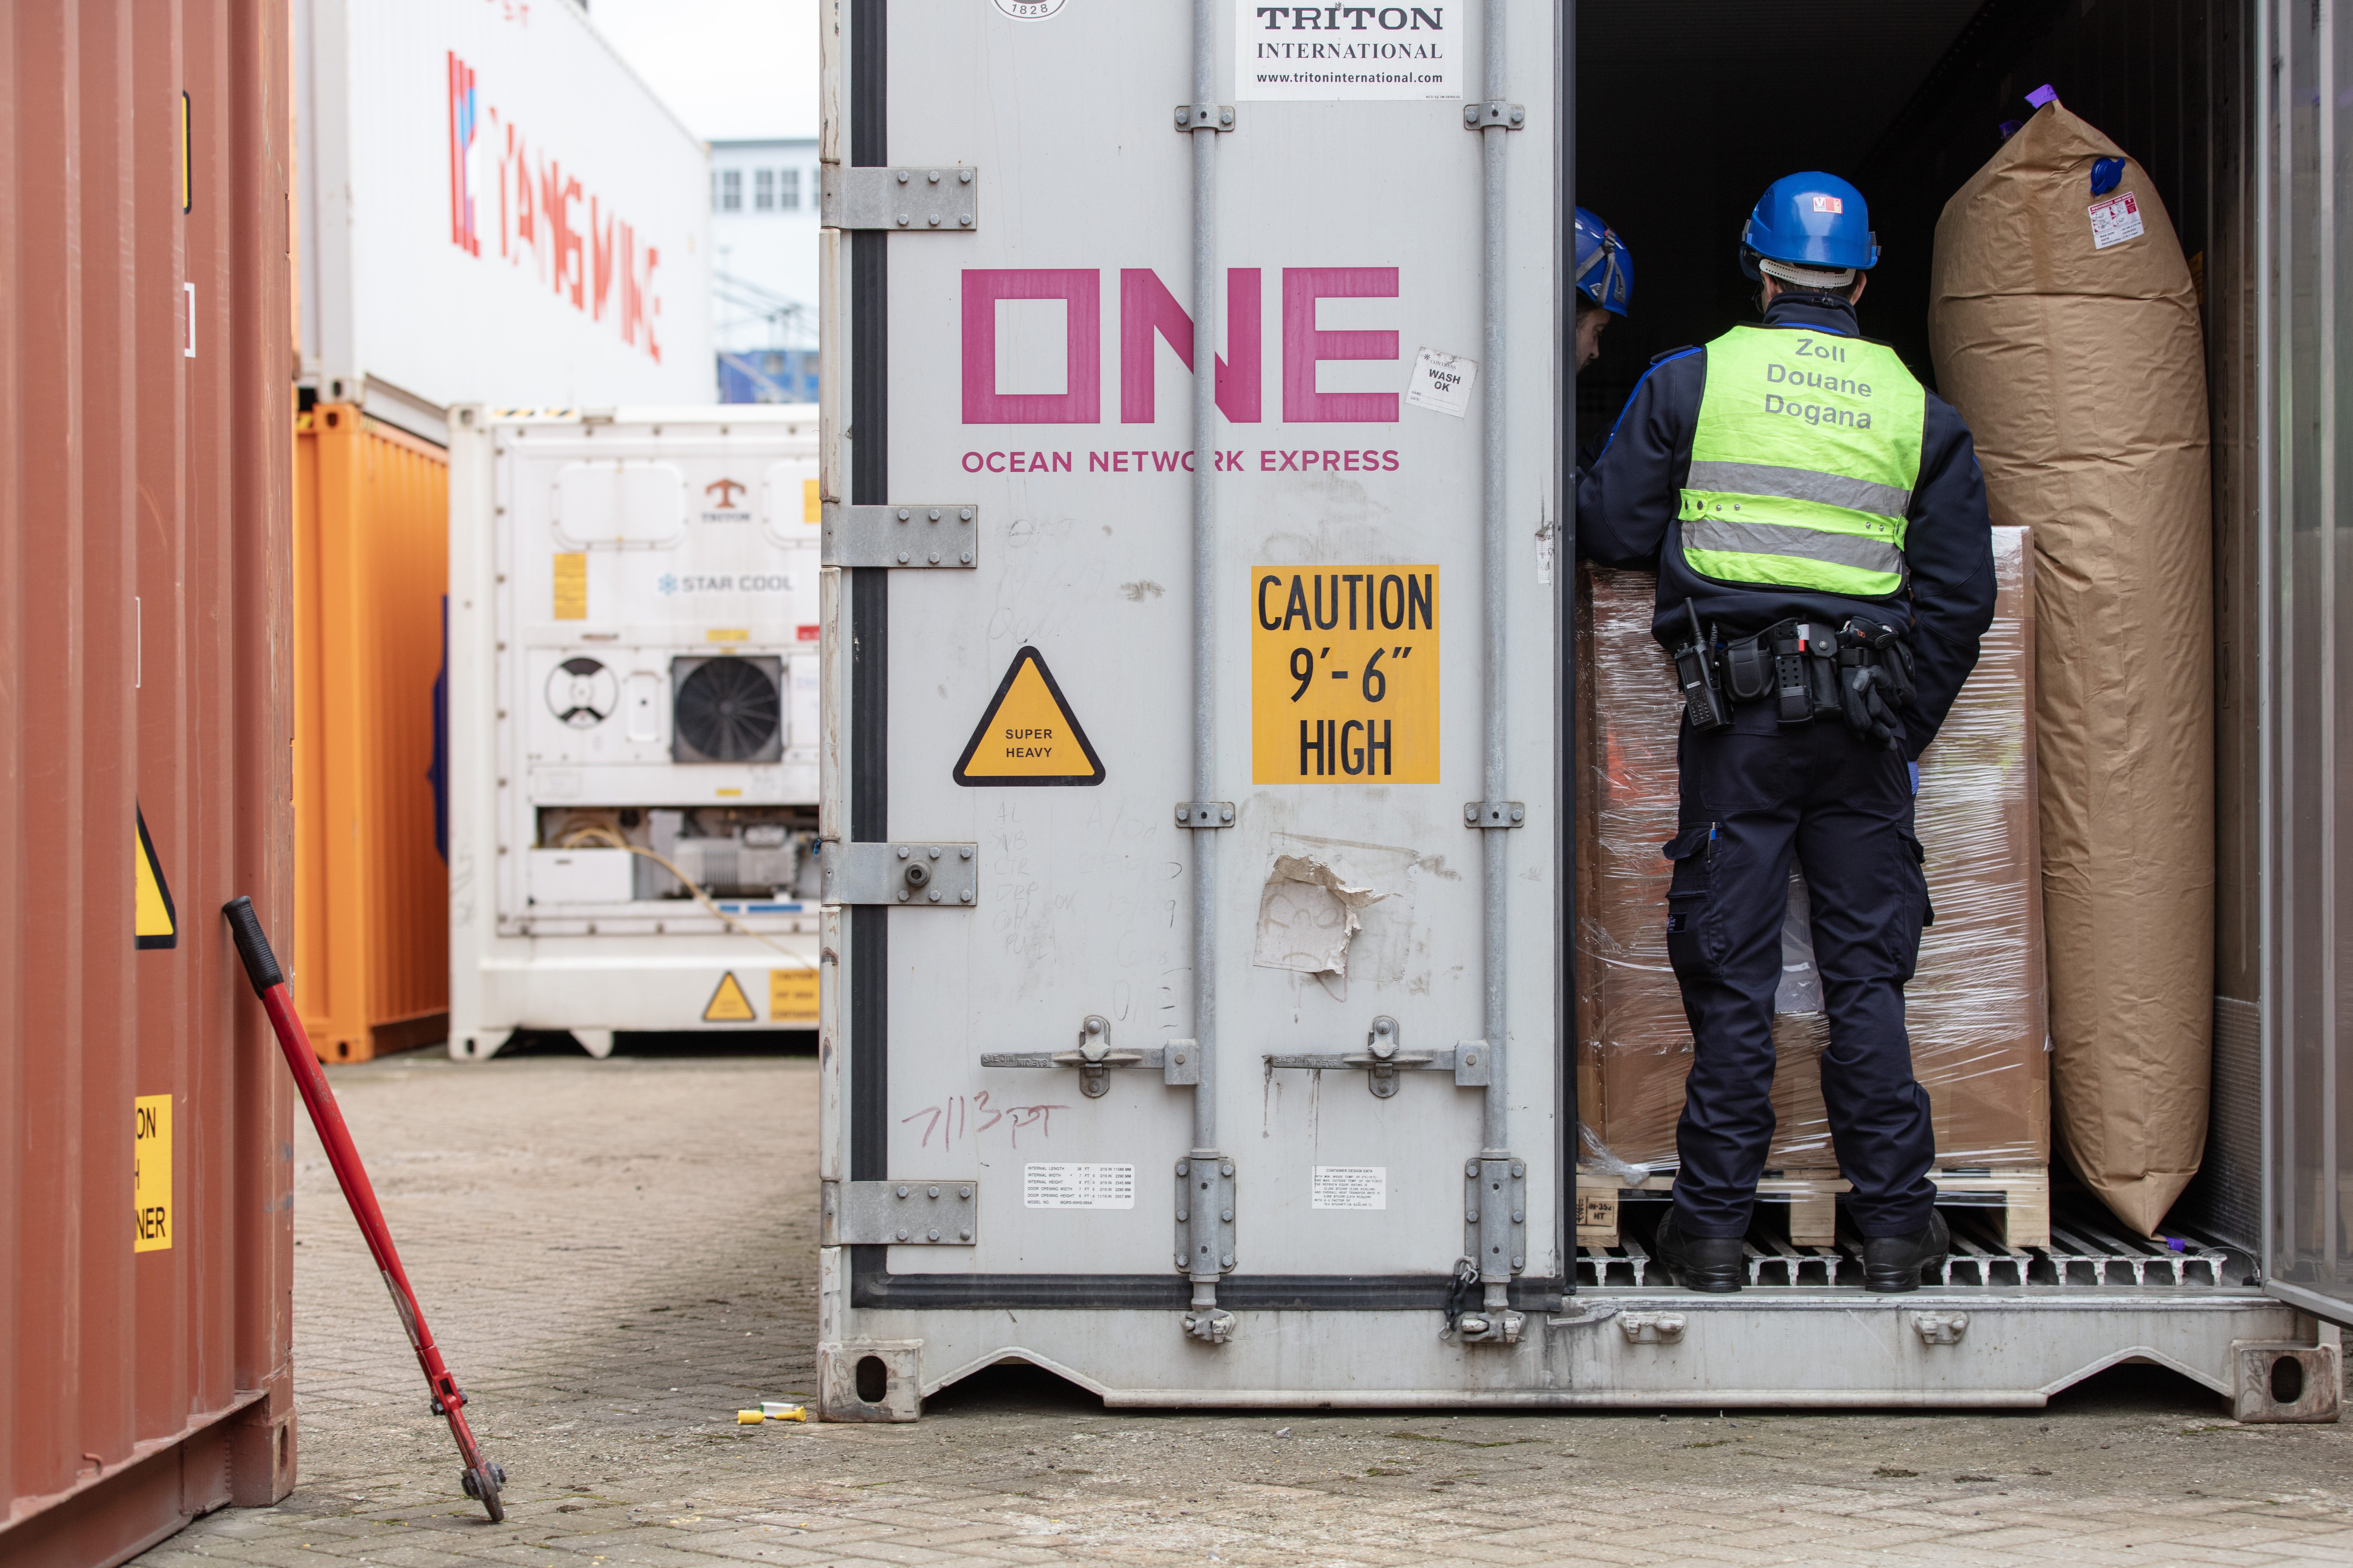 只有一小部分通过巴塞尔港口的集装箱可以接受检查。